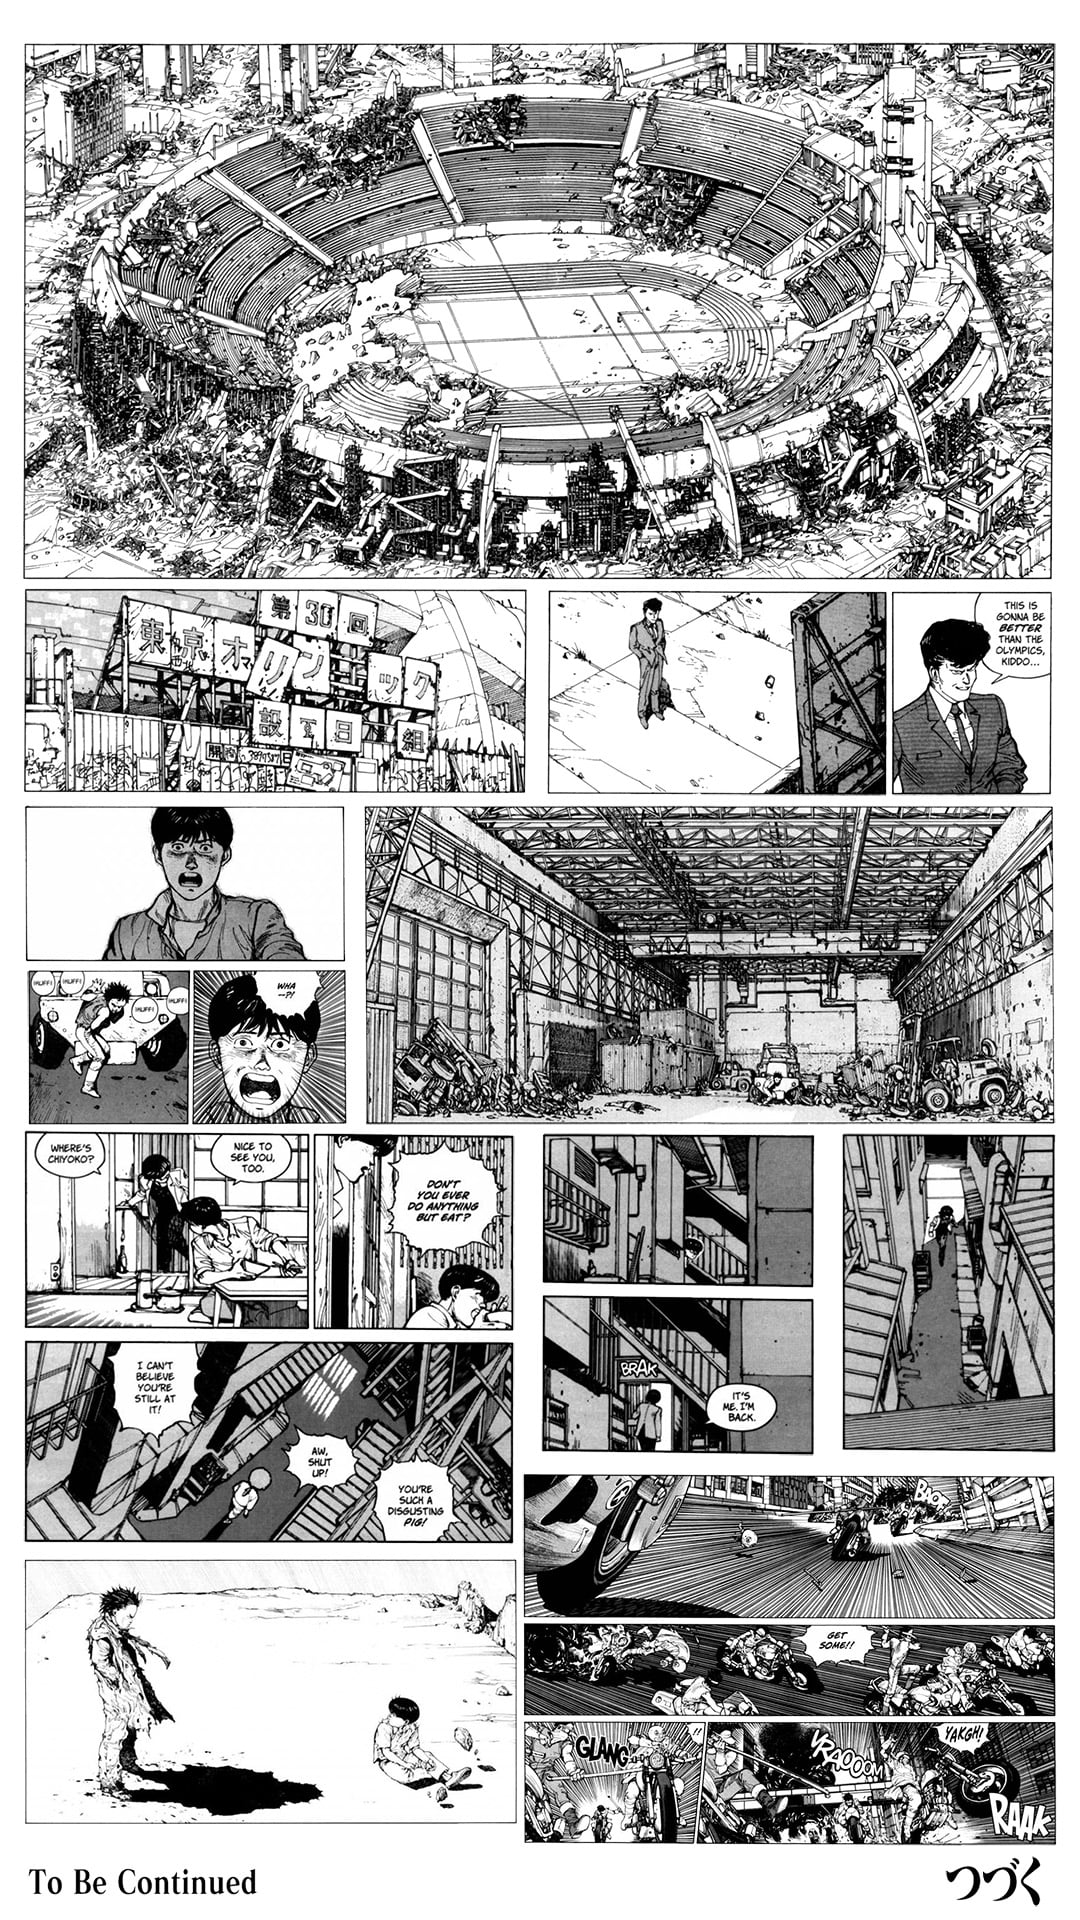 Manga Book Page Akira Anime Manga Monochrome Hd Wallpaper Wallpaper Flare